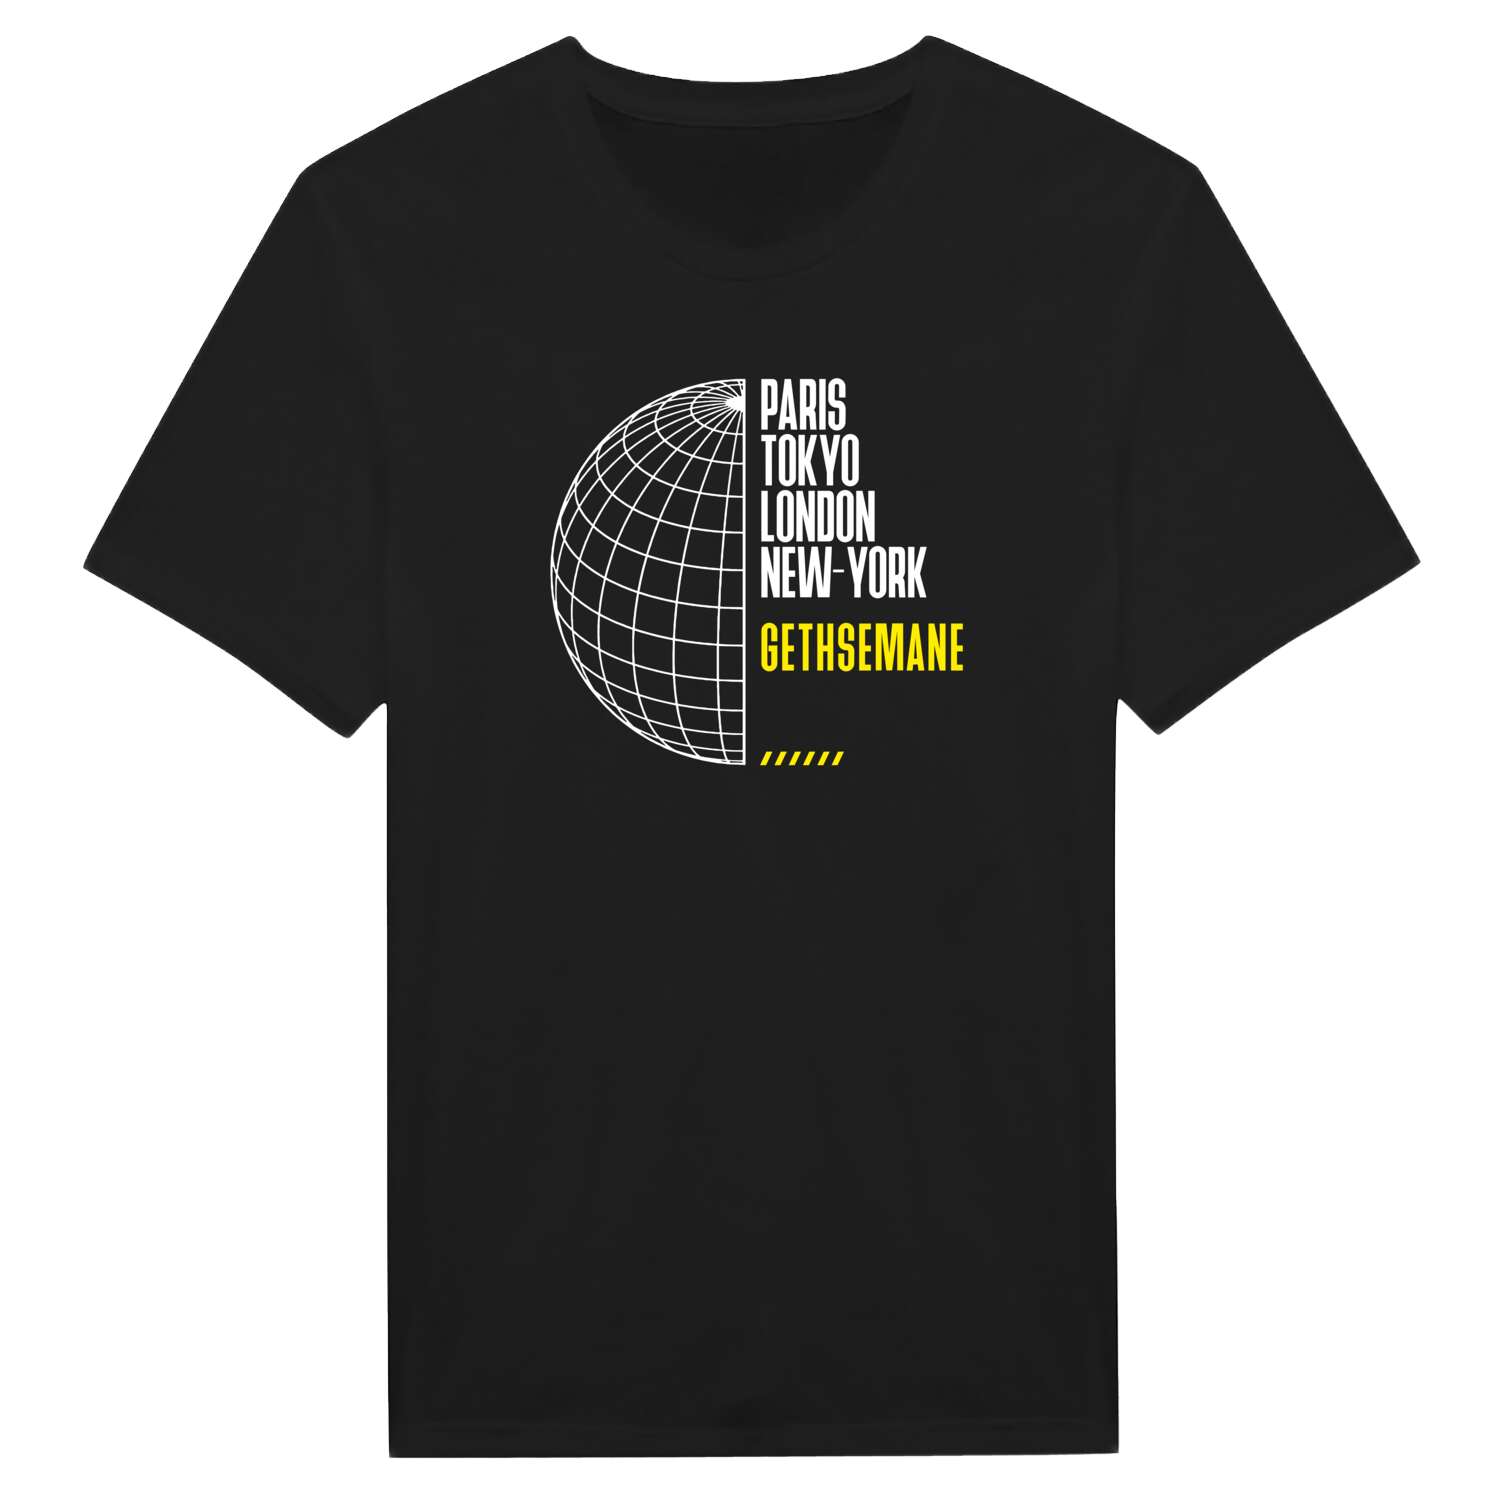 Gethsemane T-Shirt »Paris Tokyo London«